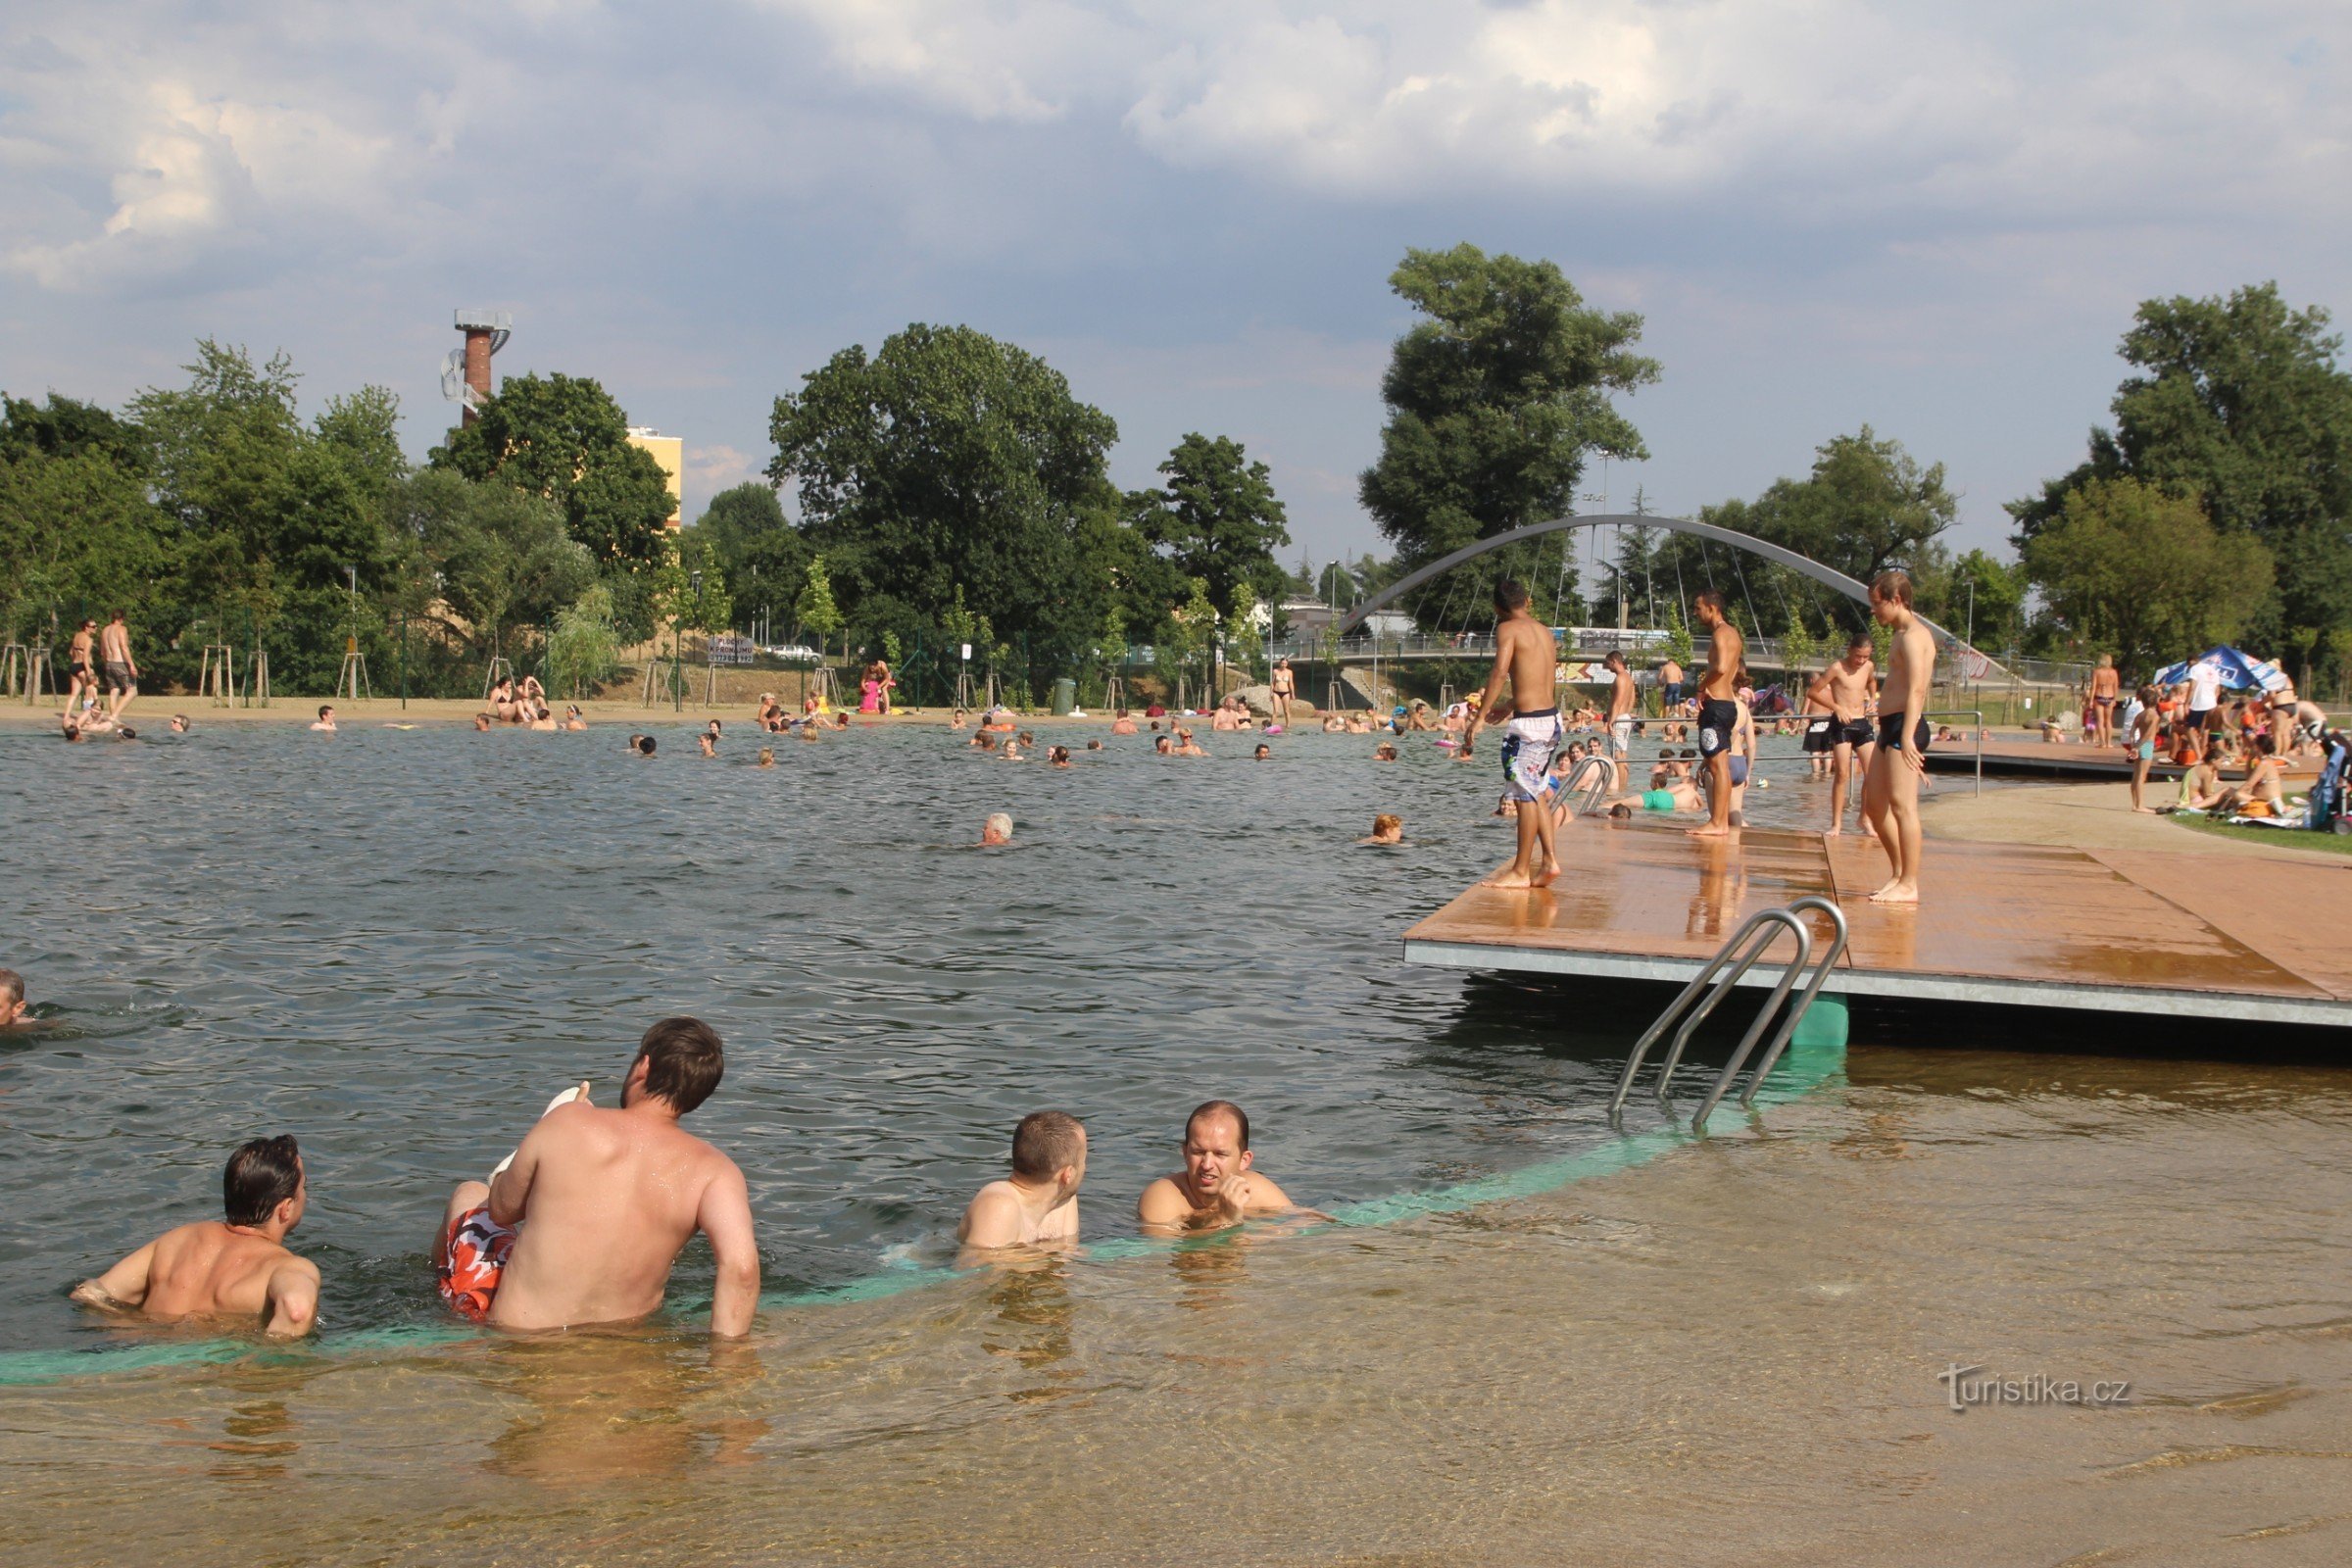 La piscina se encuentra cerca del nuevo puente ciclista sobre el río Svratka, al fondo.